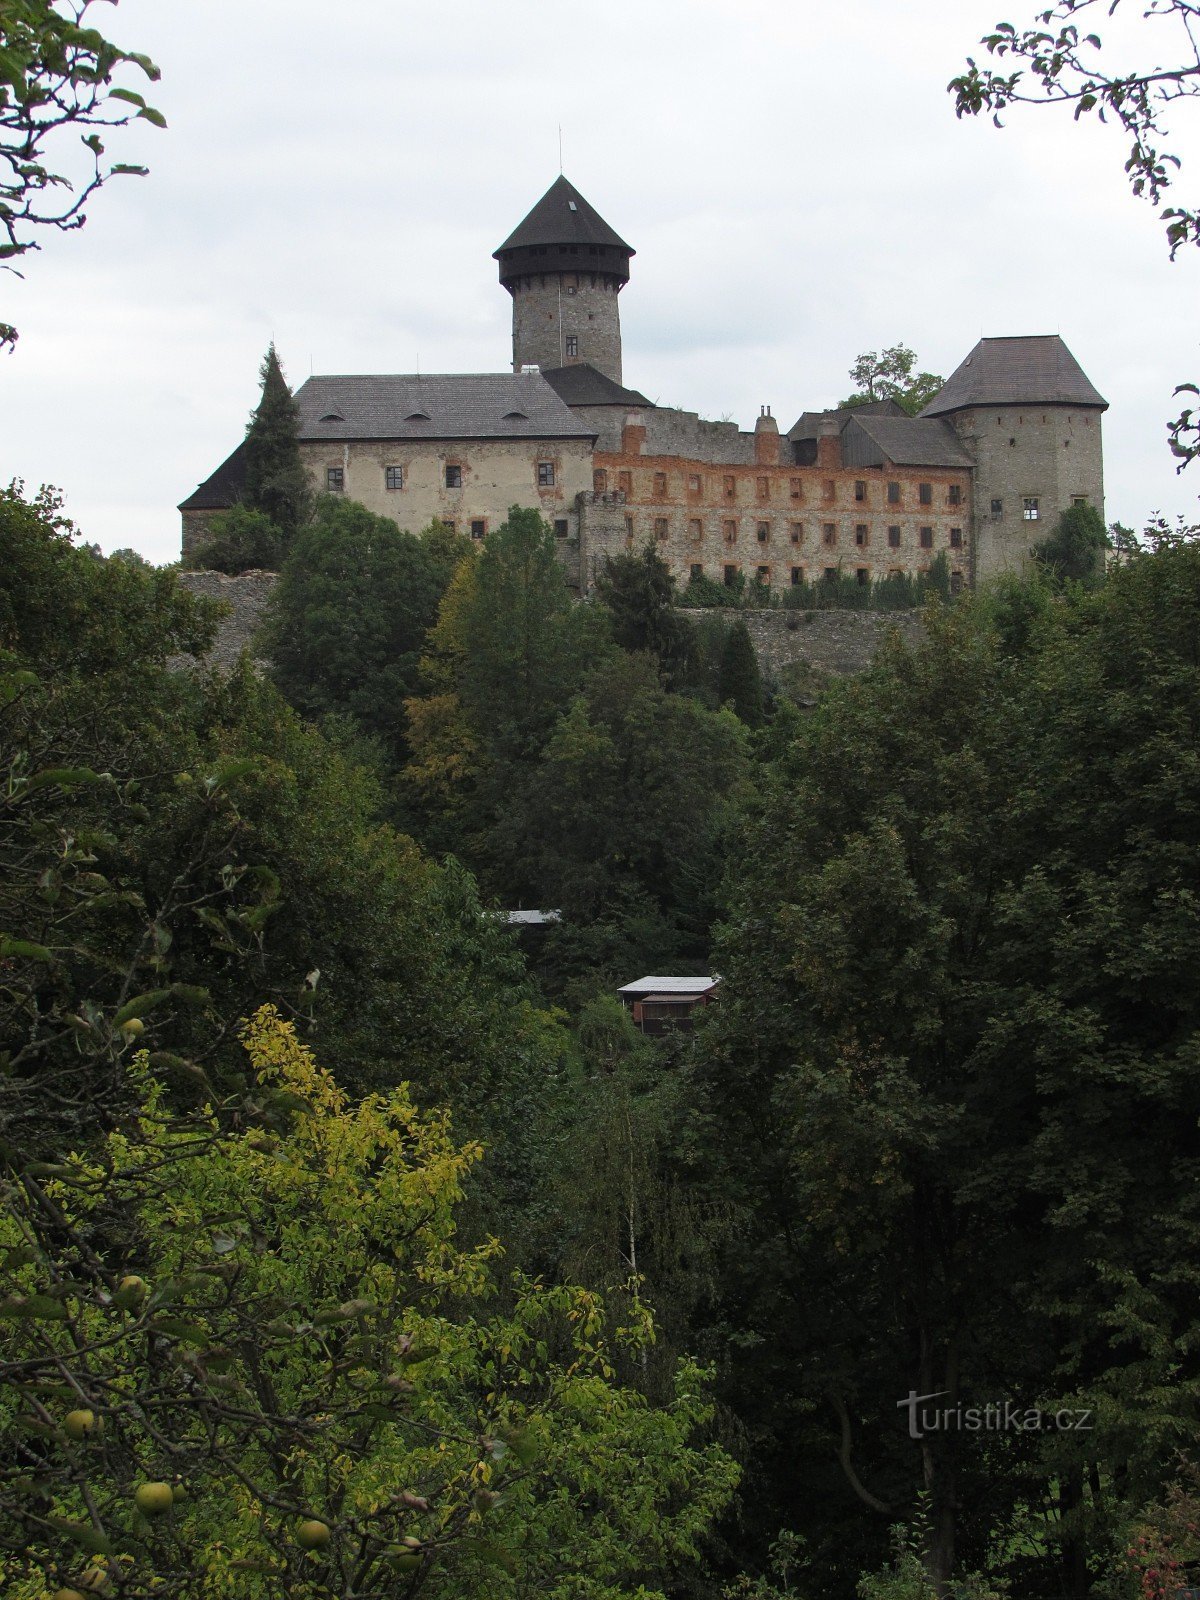 Cele mai frumoase privelisti ale Castelului Sovinec